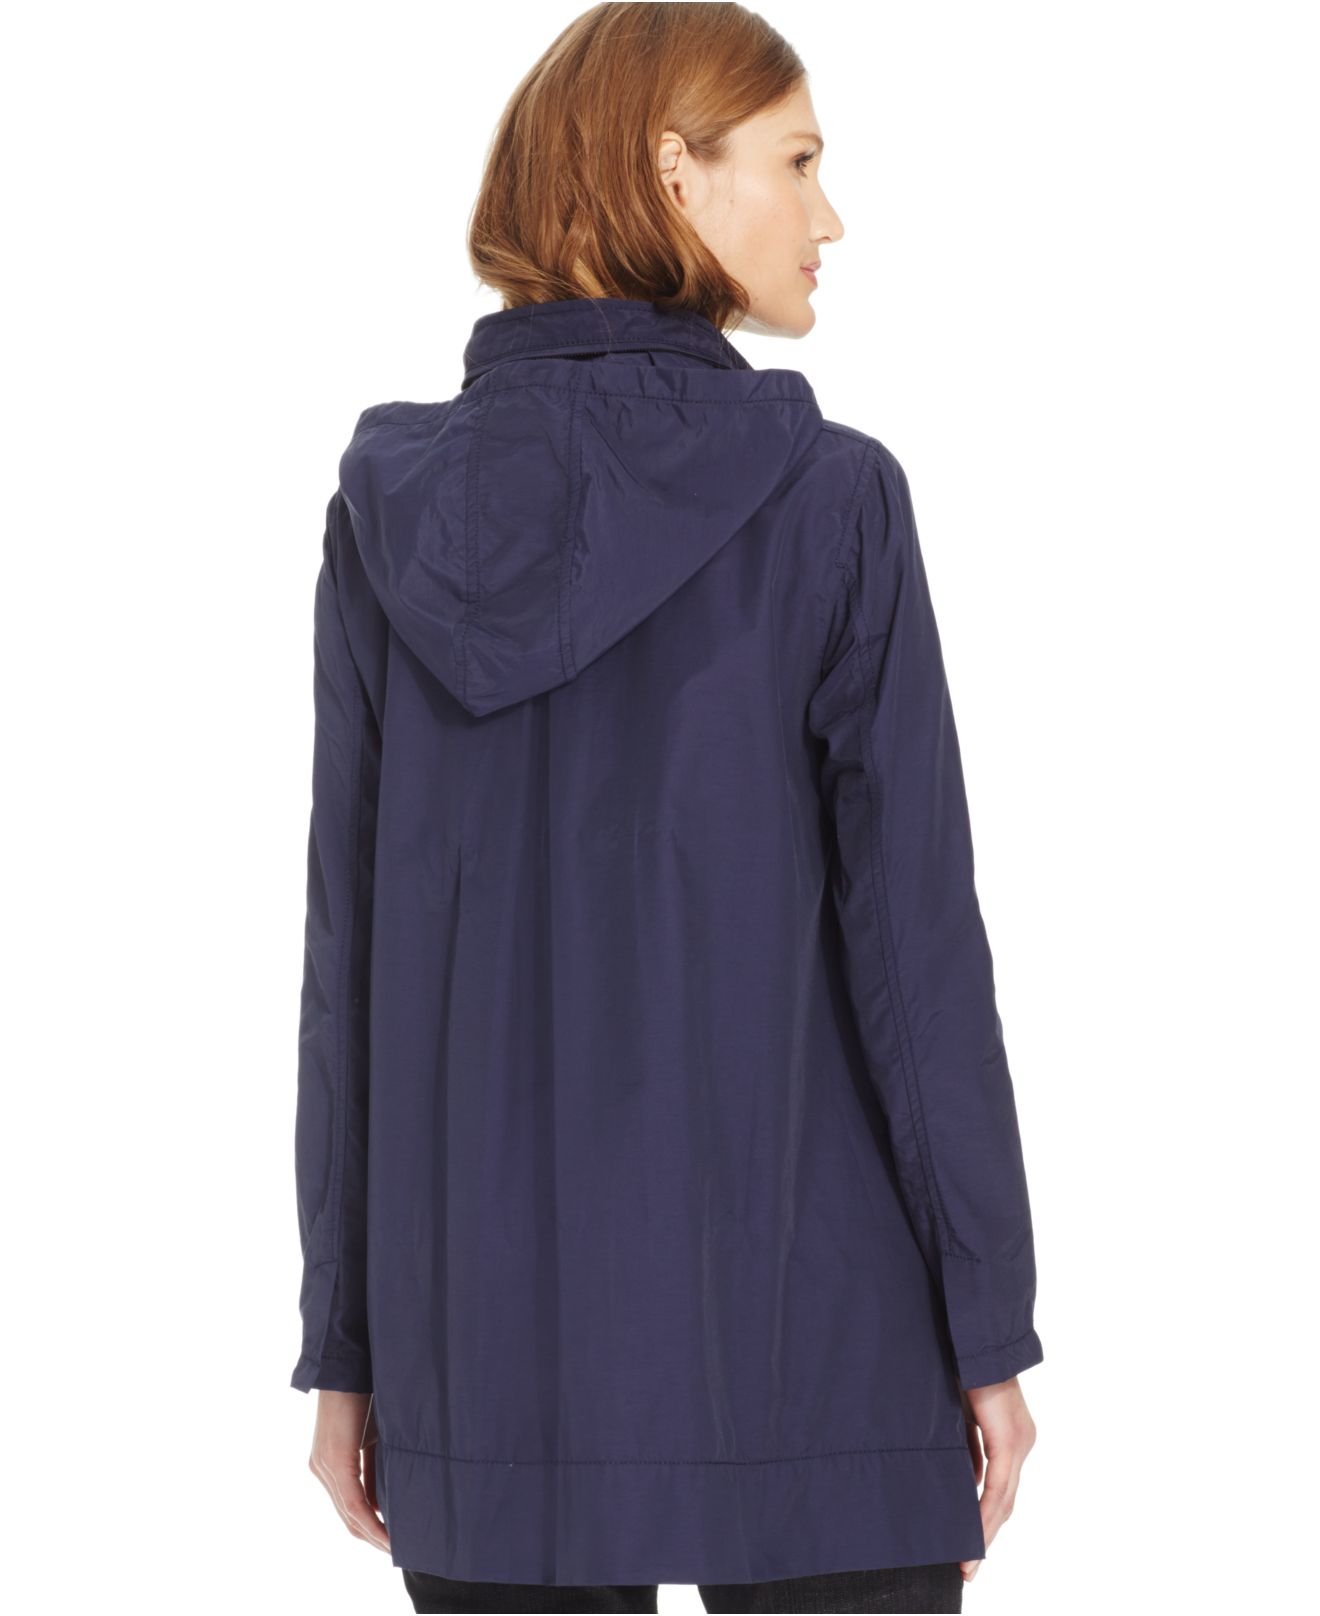 Eileen Fisher Hooded A-line Rain Jacket in Blue